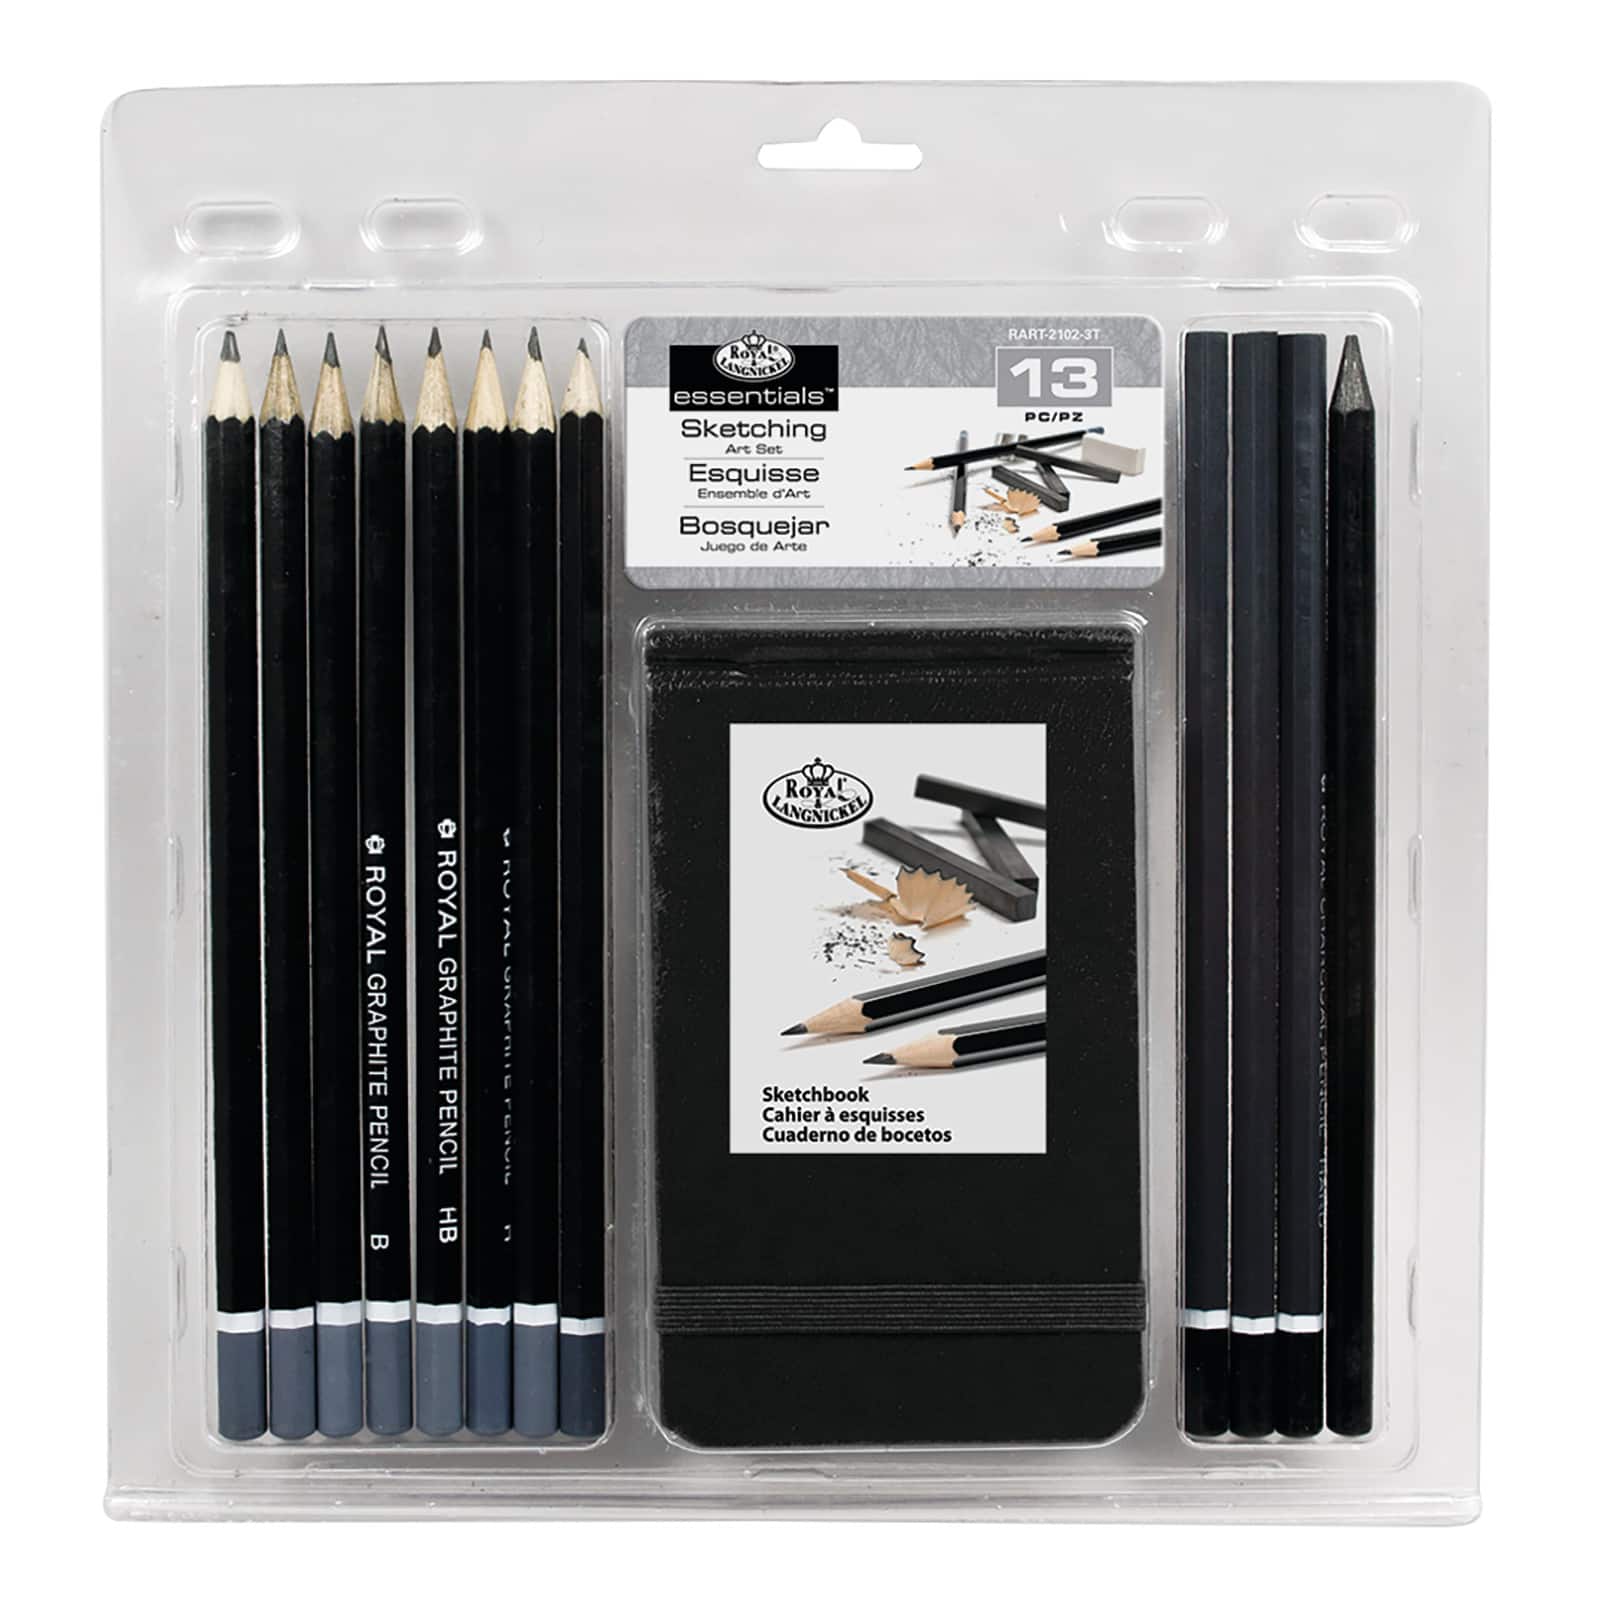 Royal & Langnickel® Essentials™ Sketching Art Set With Sketchbook